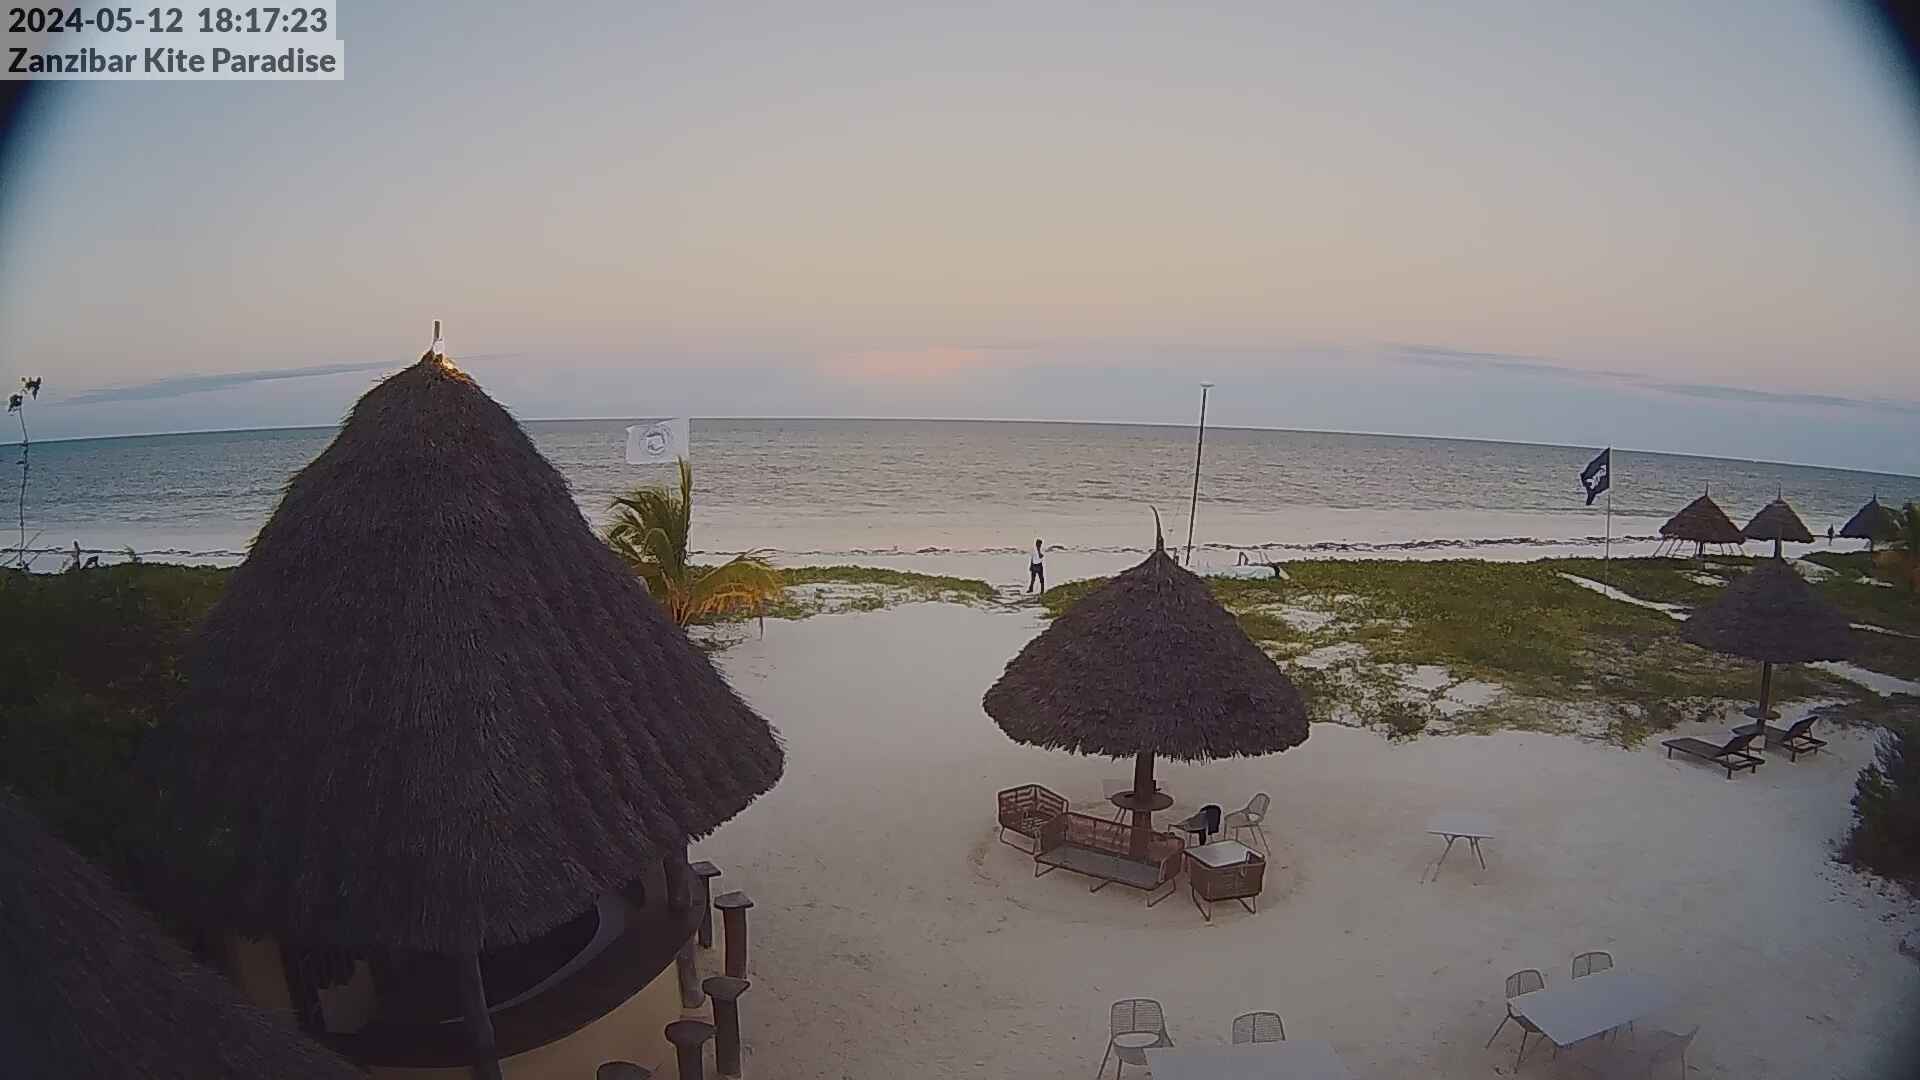 Paje Beach (Zanzibar) Ma. 18:17